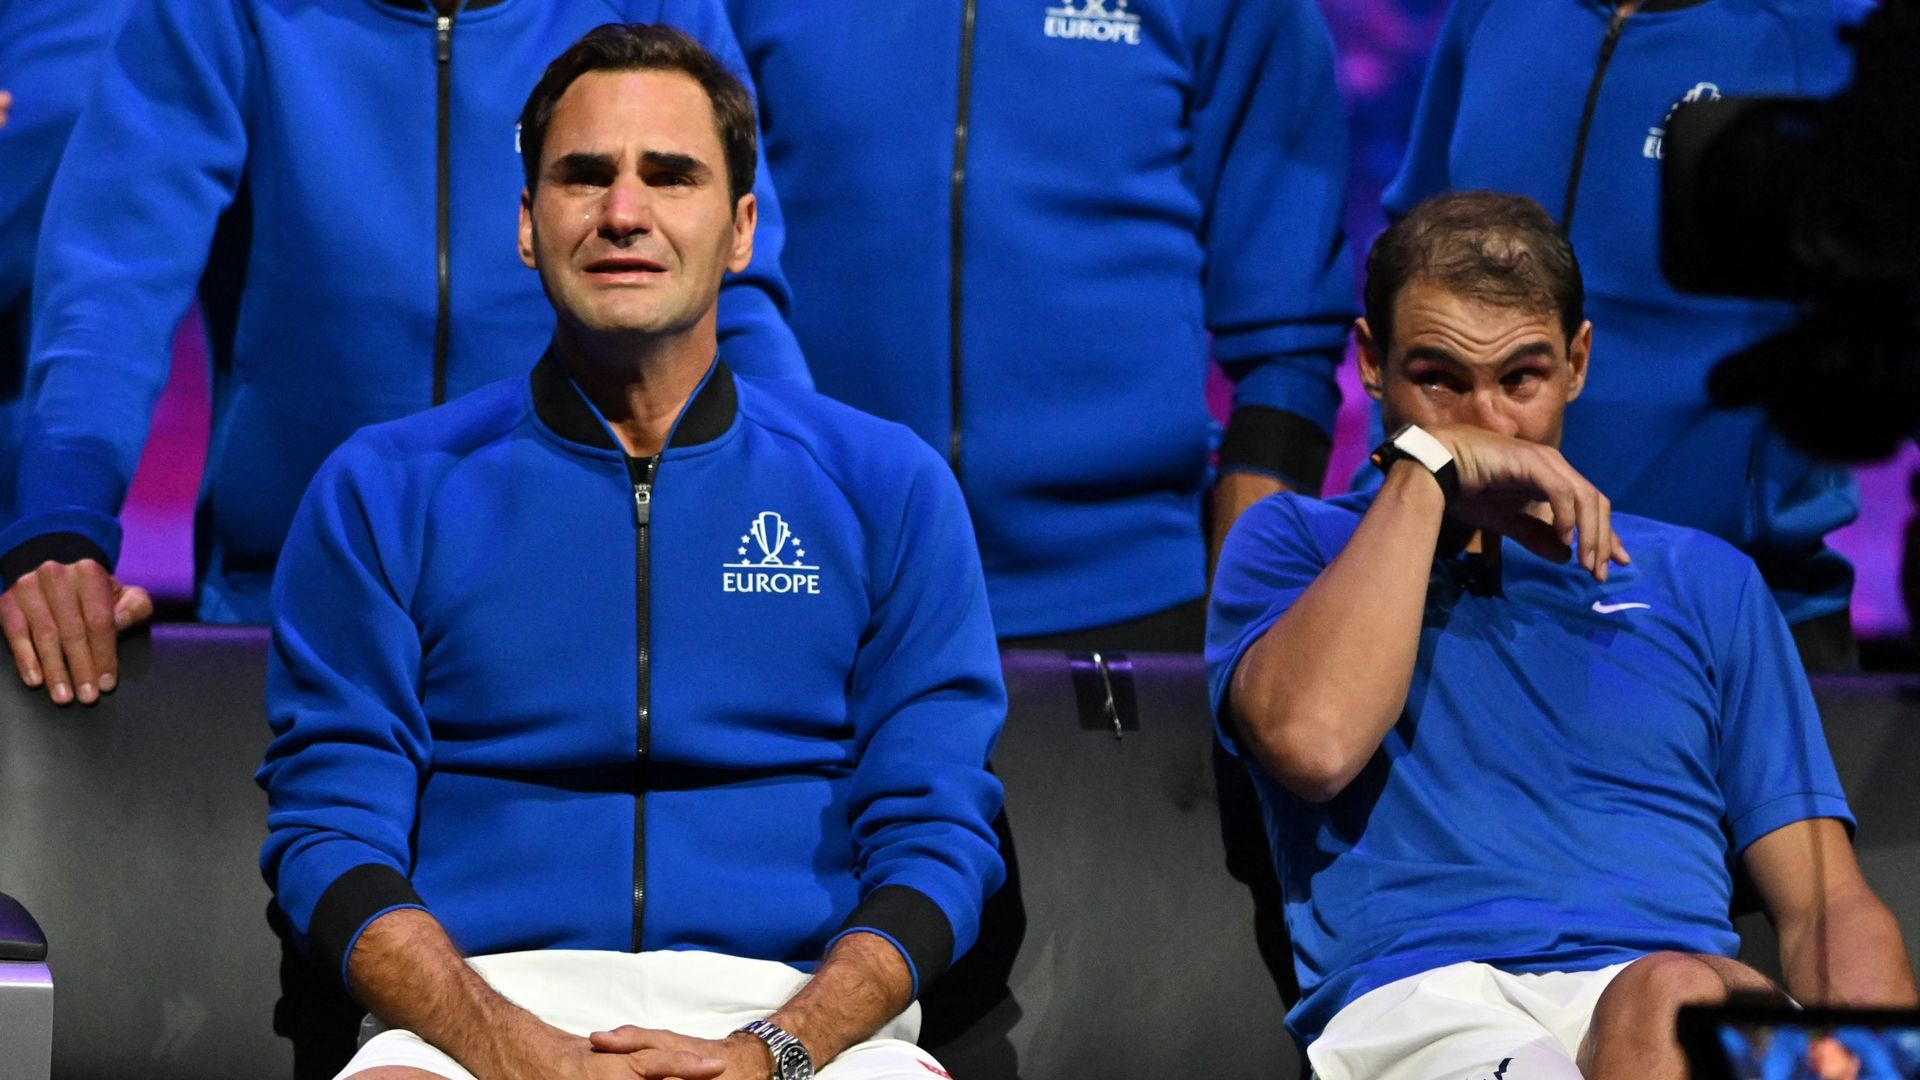 Nadal et Federer étaient très émus après leur double lors de la Laver Cup.